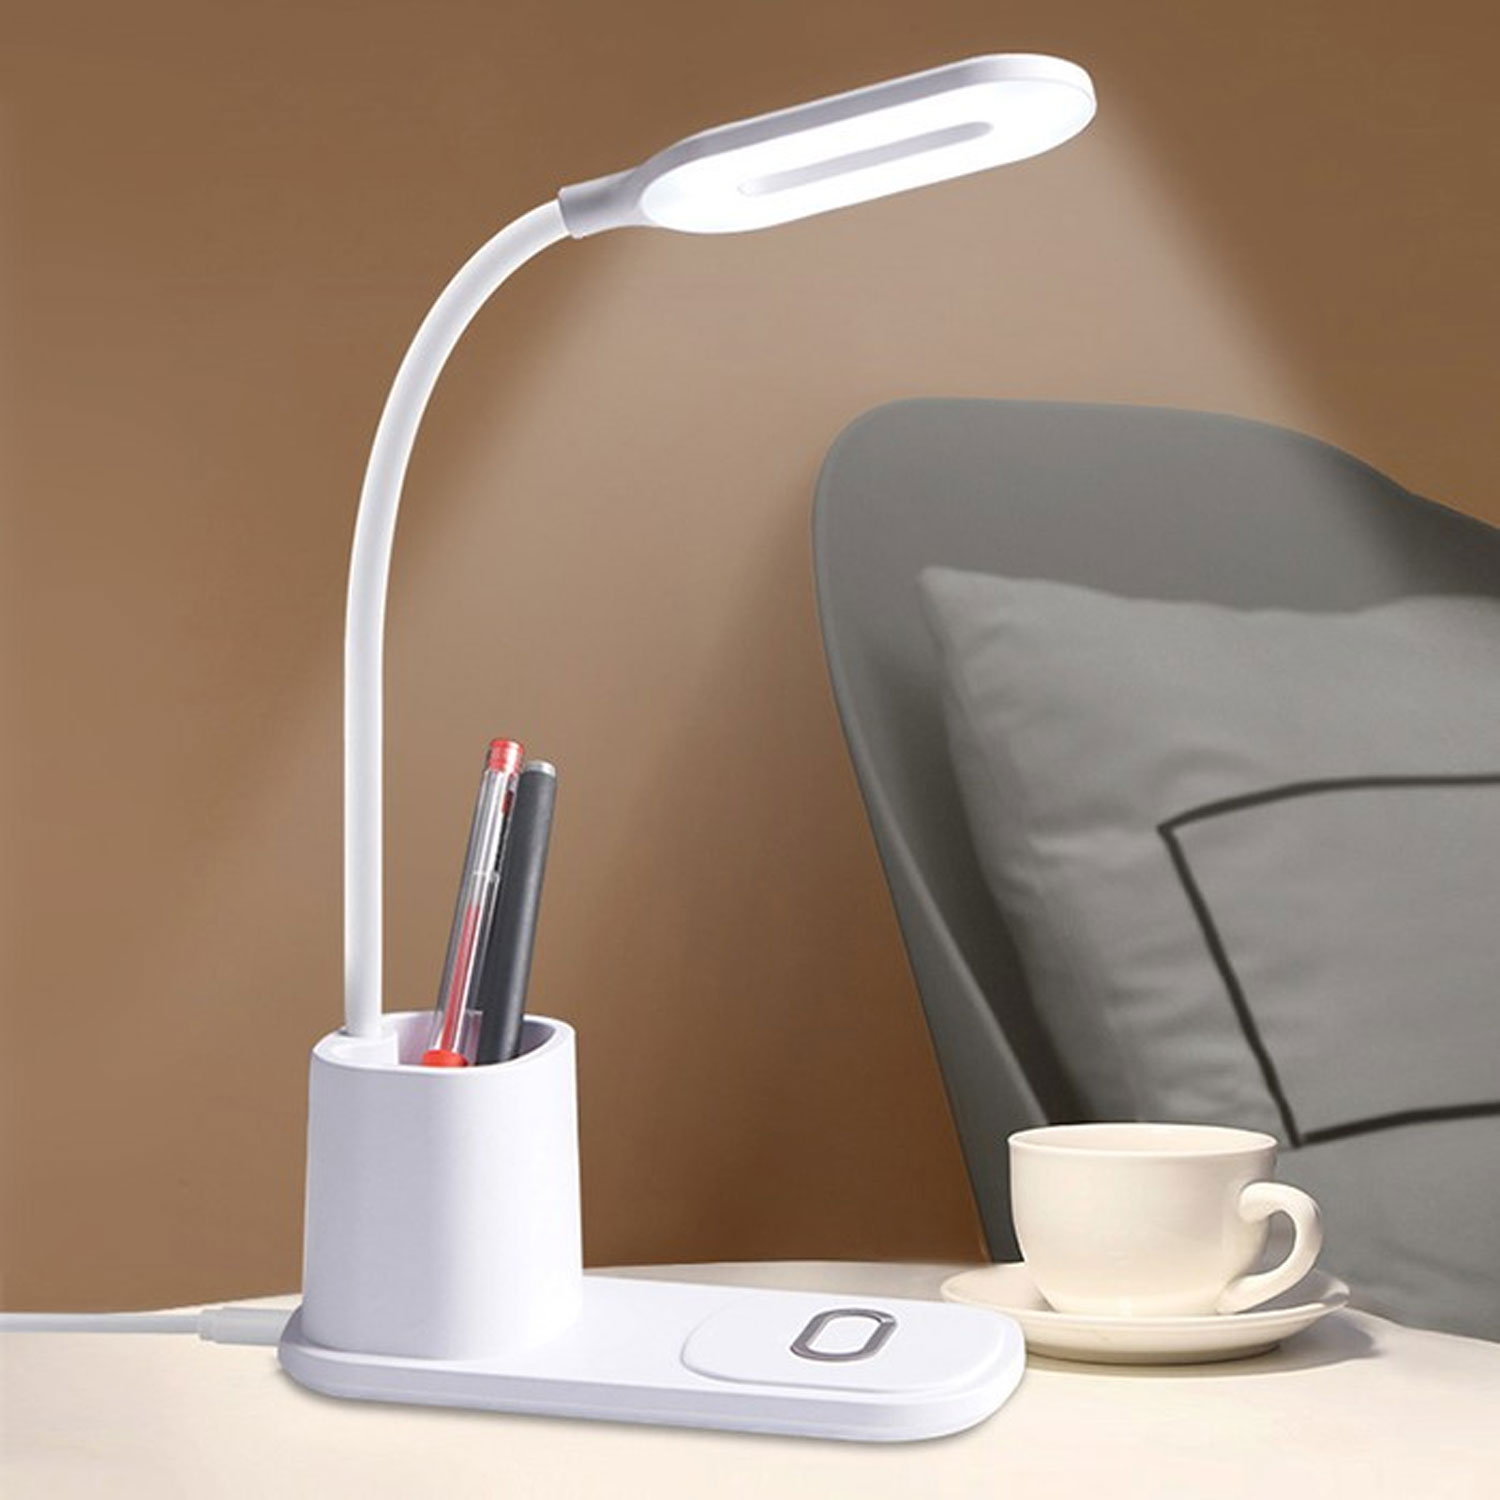 Fast Wireless Charging 10w Desk Lamp